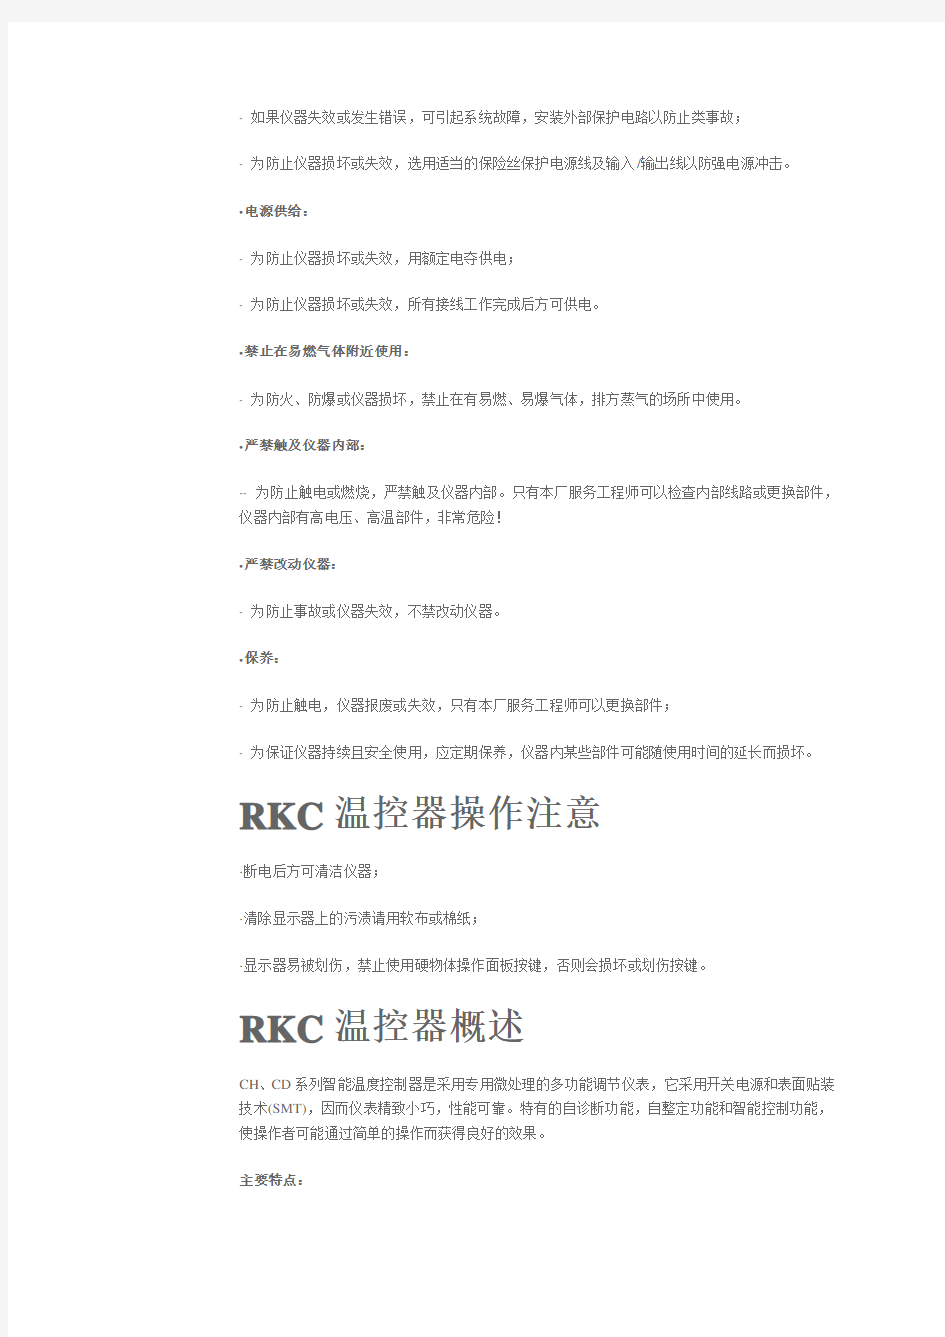 RKC温控器CD中文说明书